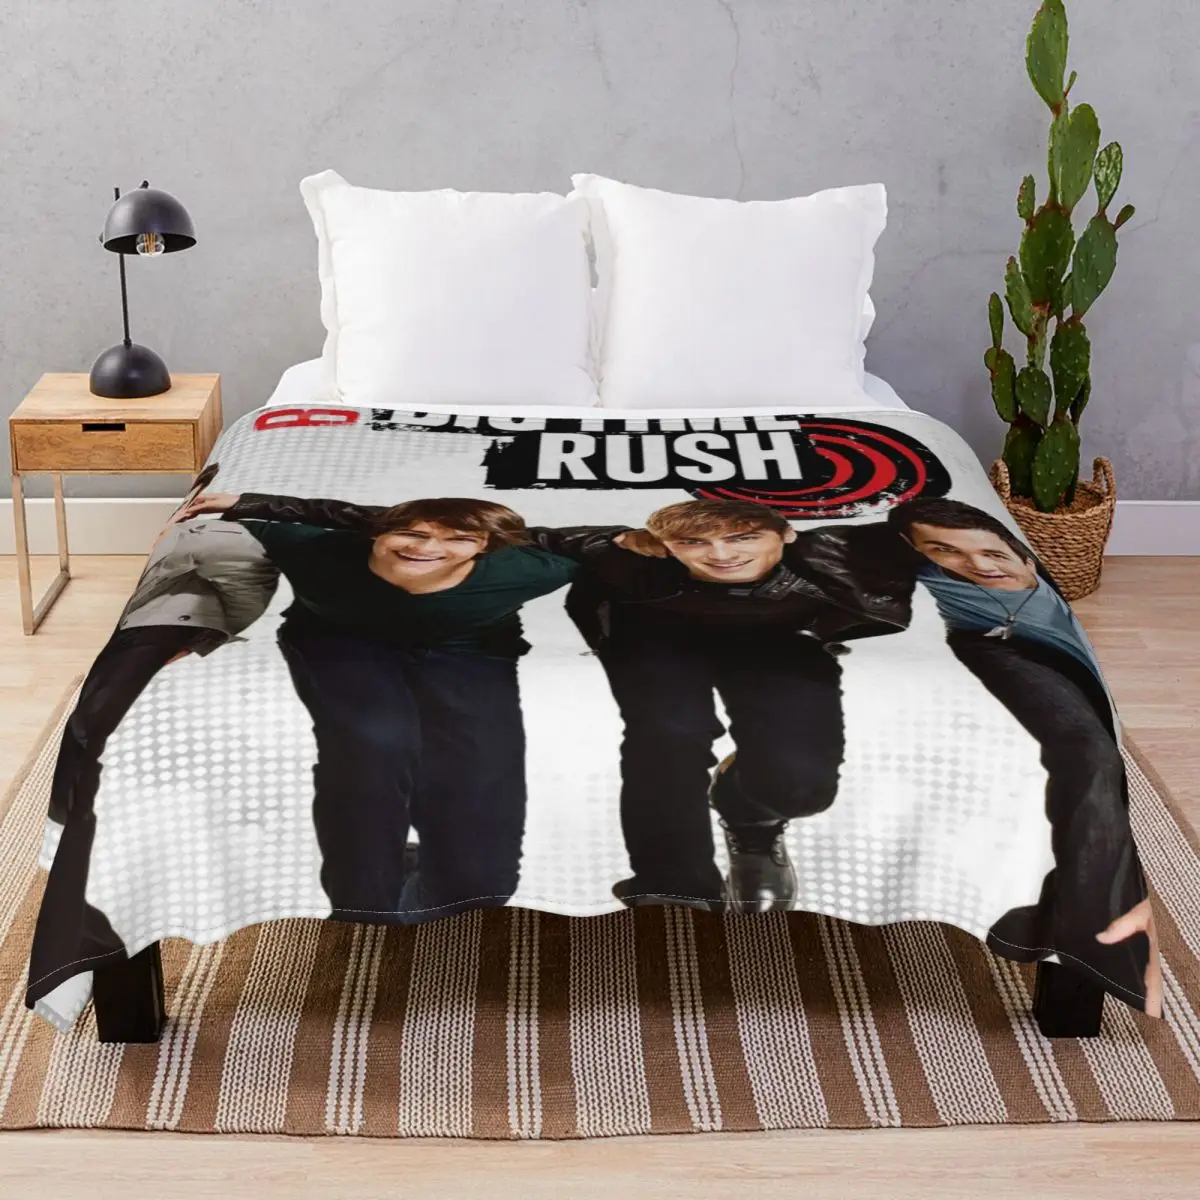 Big Time Rush Poster Blankets Velvet Spring Autumn Soft Throw Blanket for Bedding Sofa Travel Cinema